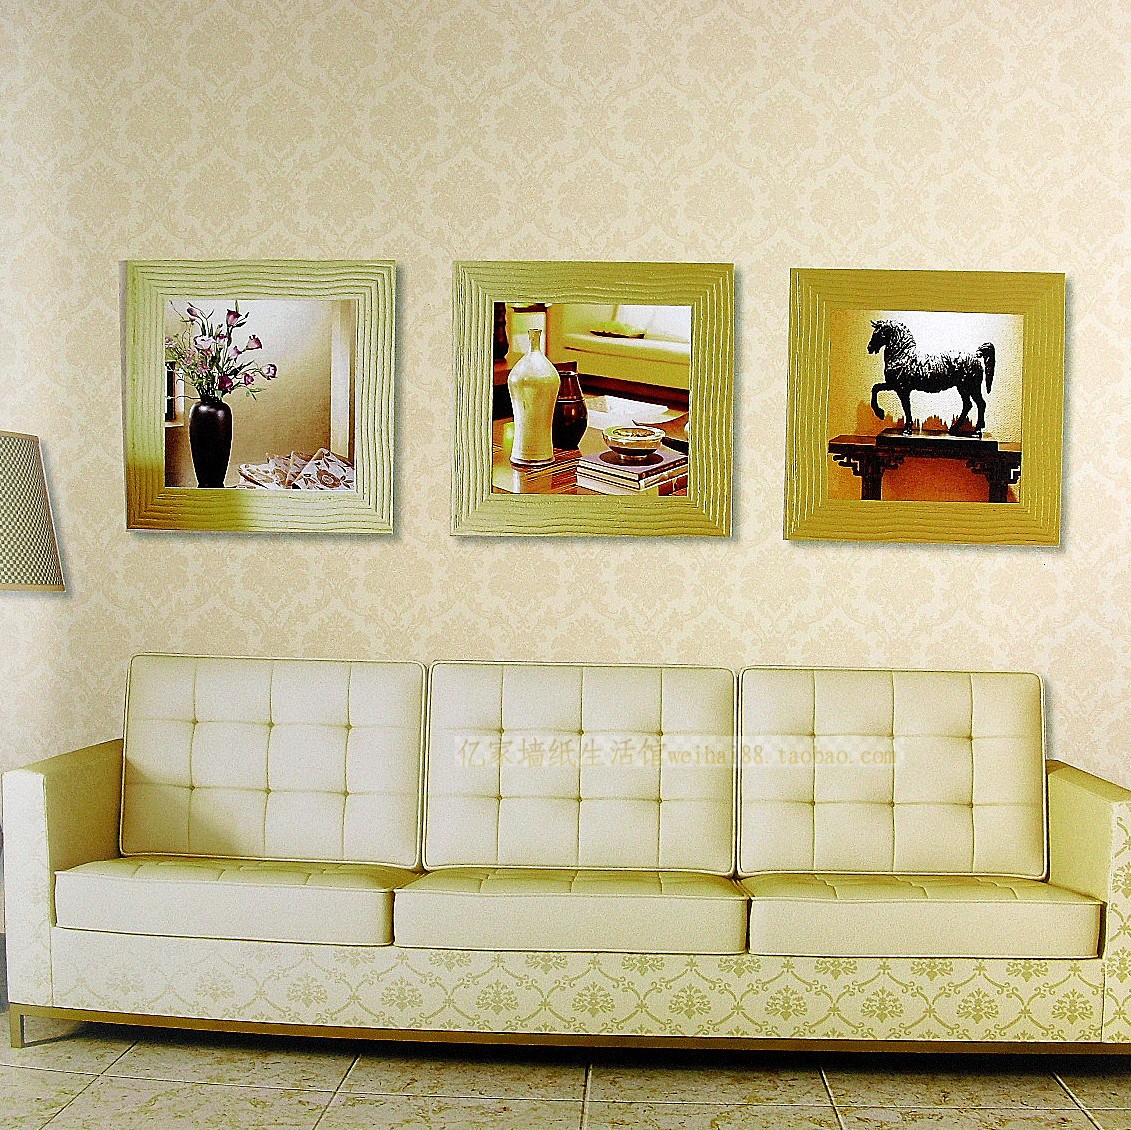 亿家墙纸 客厅电视沙发背景墙壁纸 欧式米黄色米白色浅灰色特价